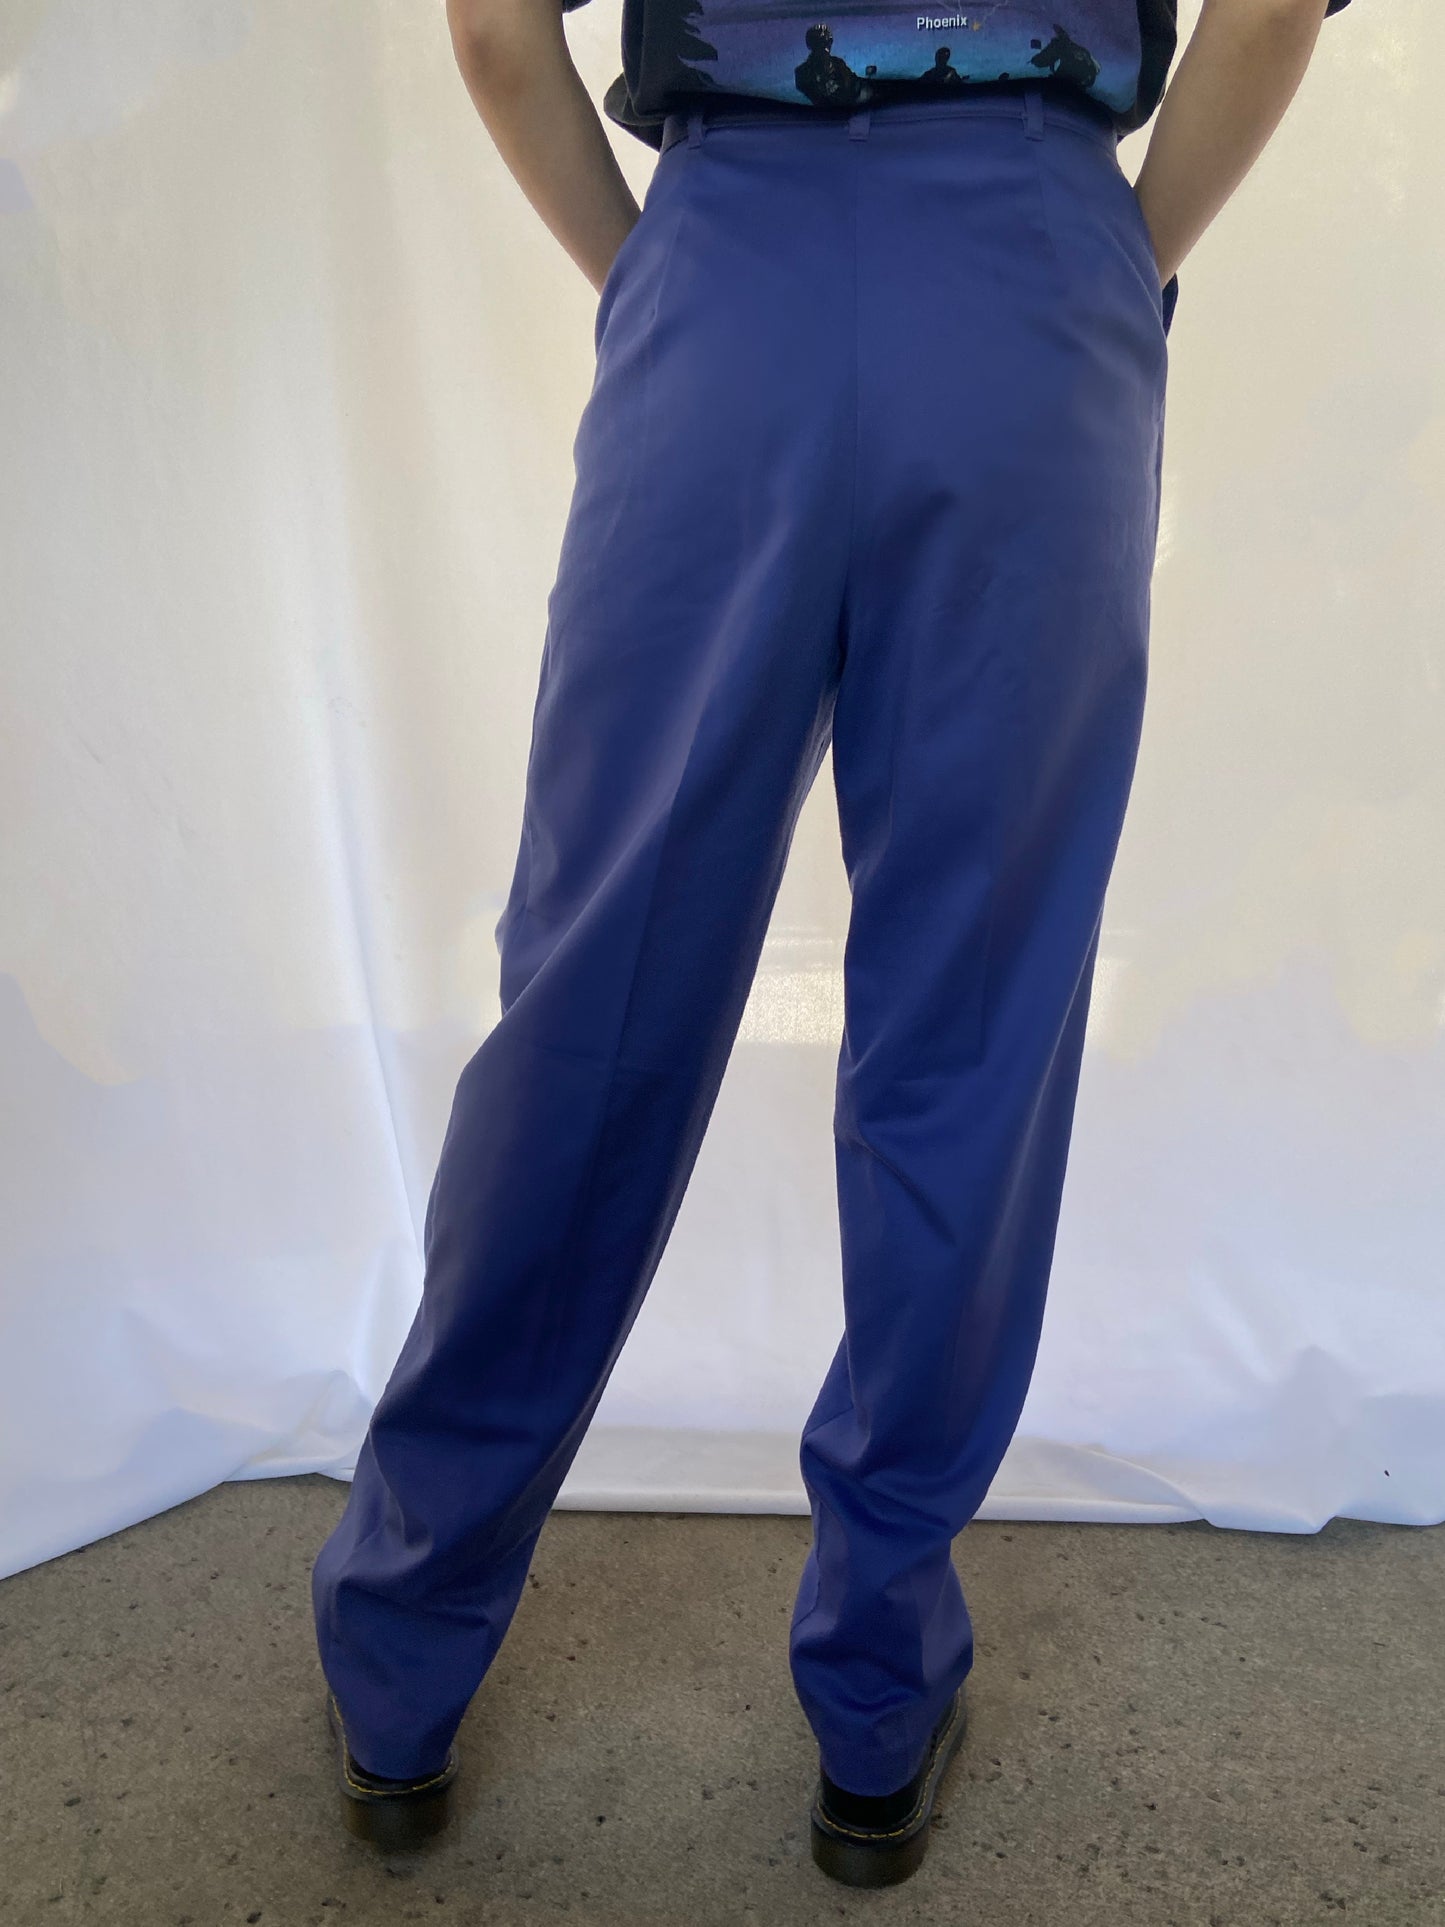 Blue Levi's Trousers - 27"